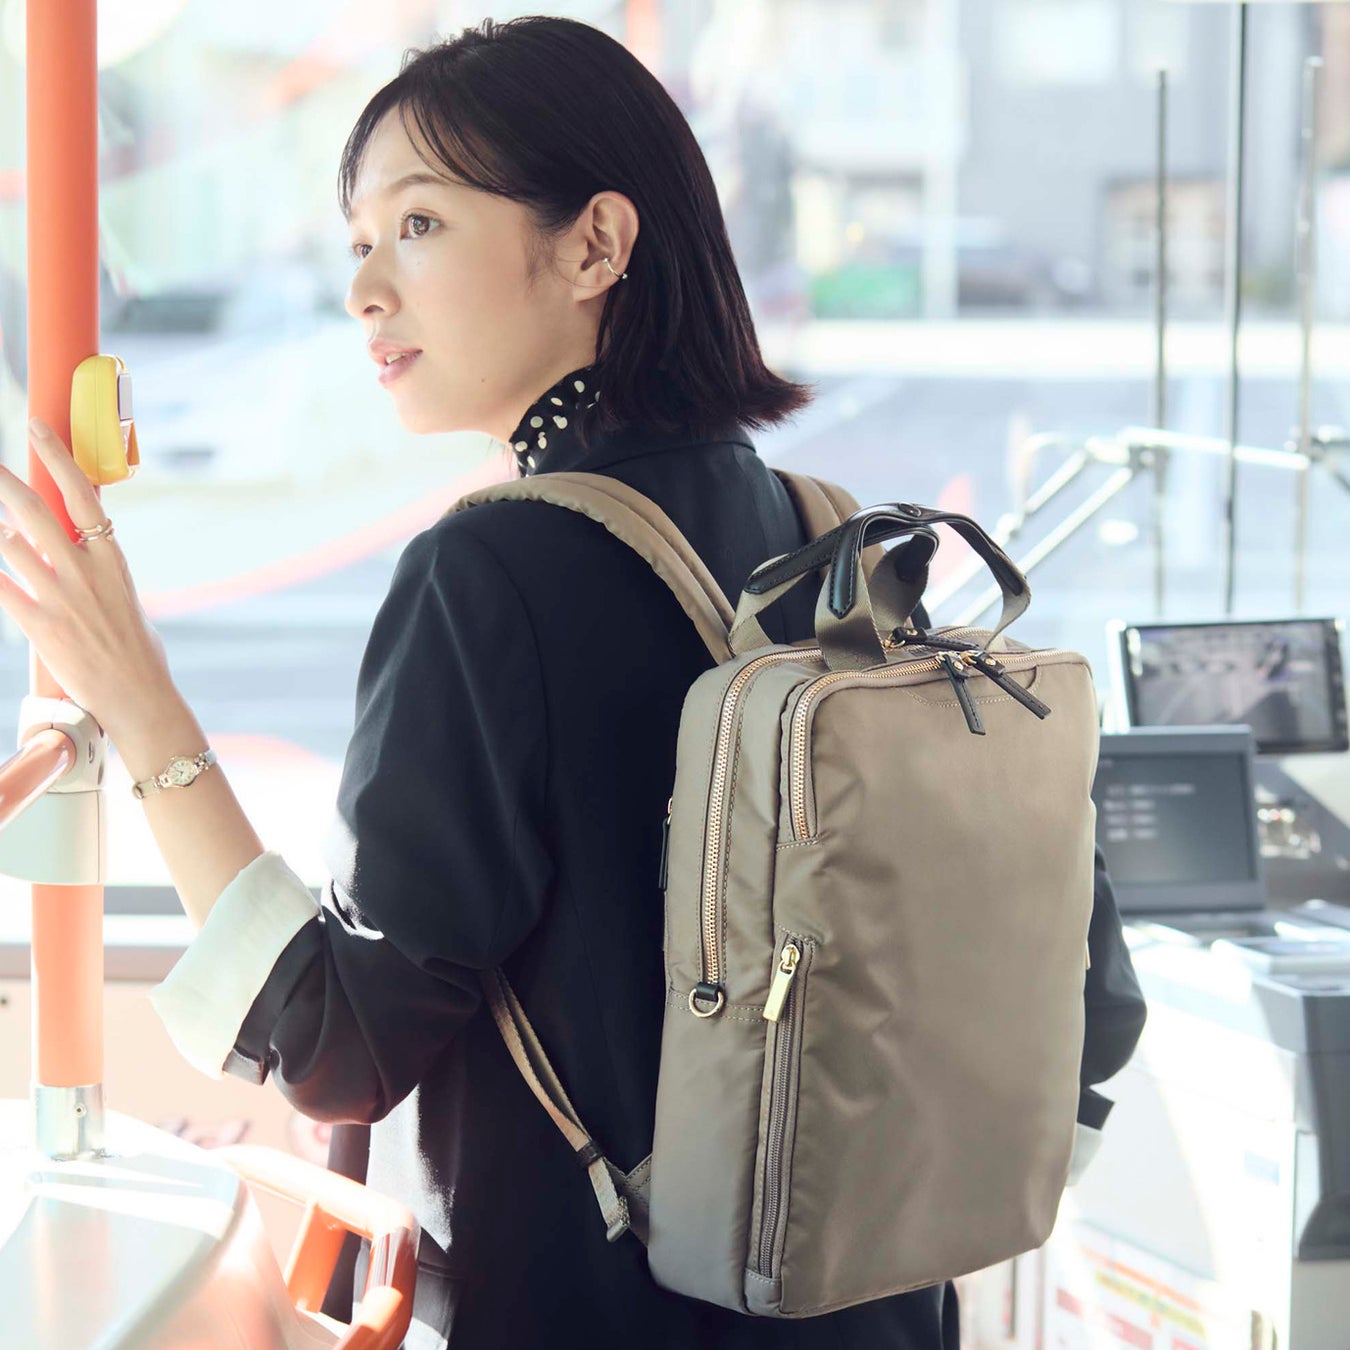 働く女性のためのバッグのセレクトショップ「WORK STYLE BEAUTIES.」ポップアップストアが東武百貨店 池袋店...